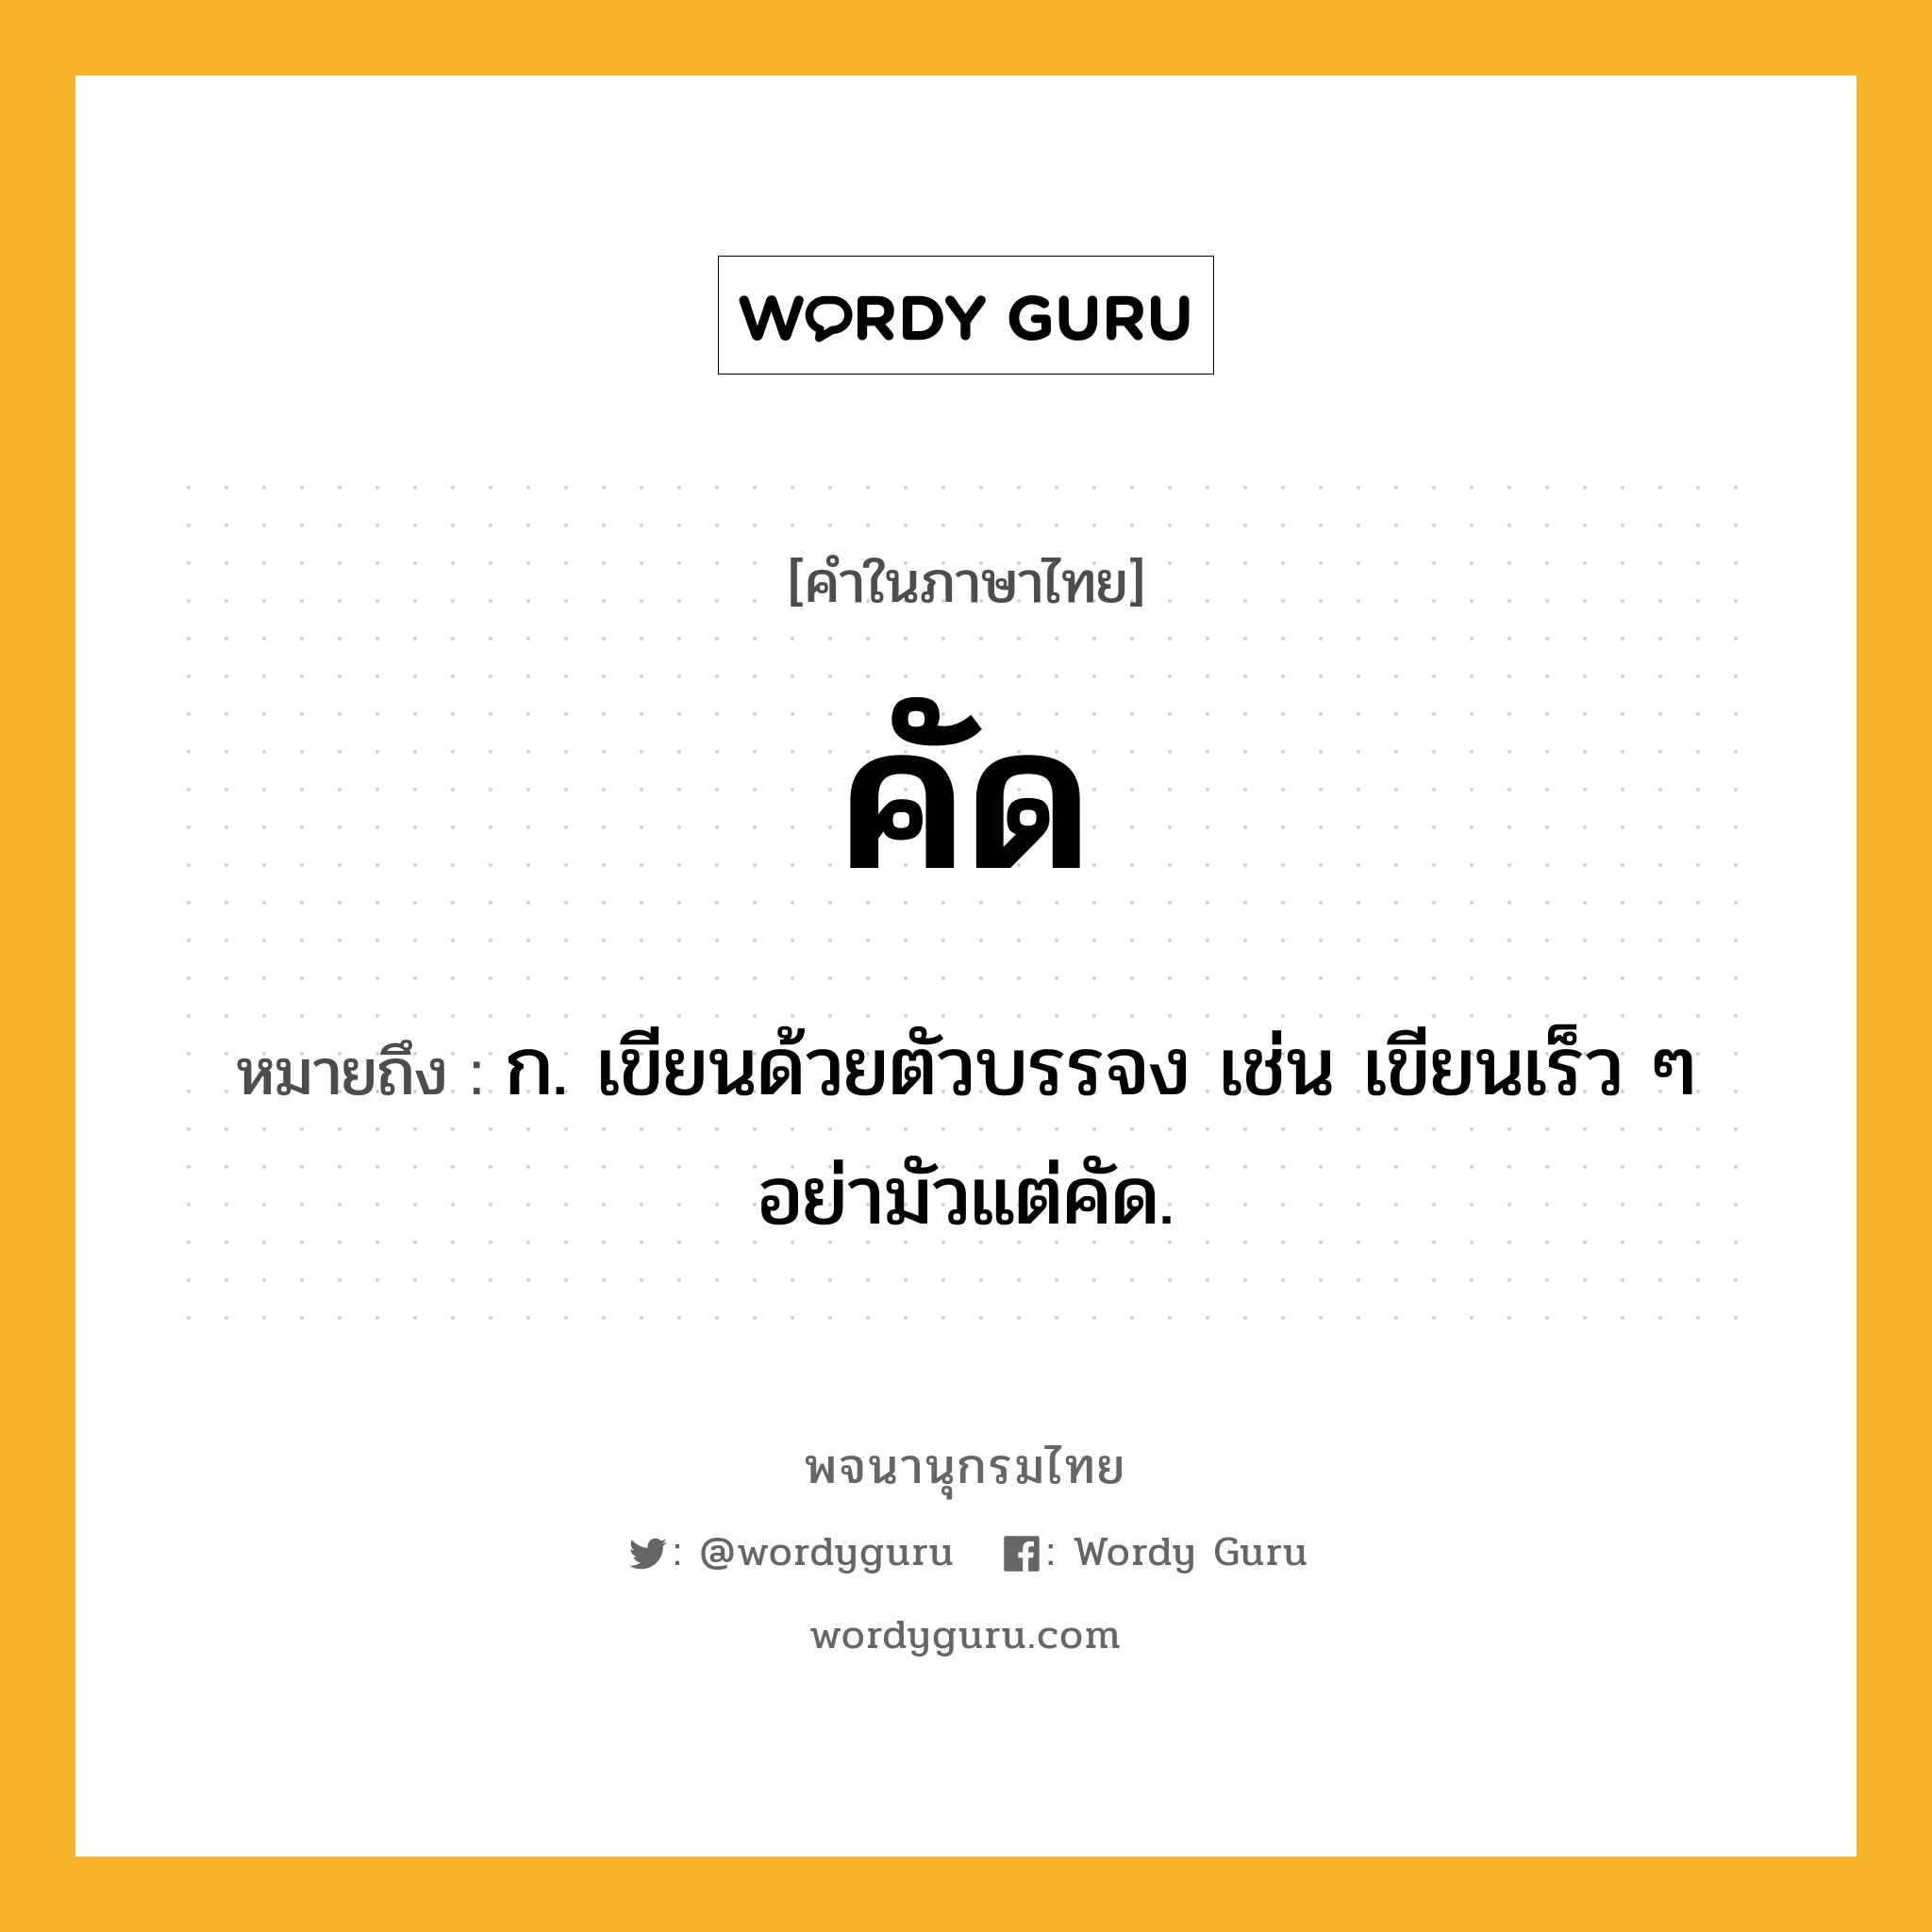 คัด หมายถึงอะไร?, คำในภาษาไทย คัด หมายถึง ก. เขียนด้วยตัวบรรจง เช่น เขียนเร็ว ๆ อย่ามัวแต่คัด.